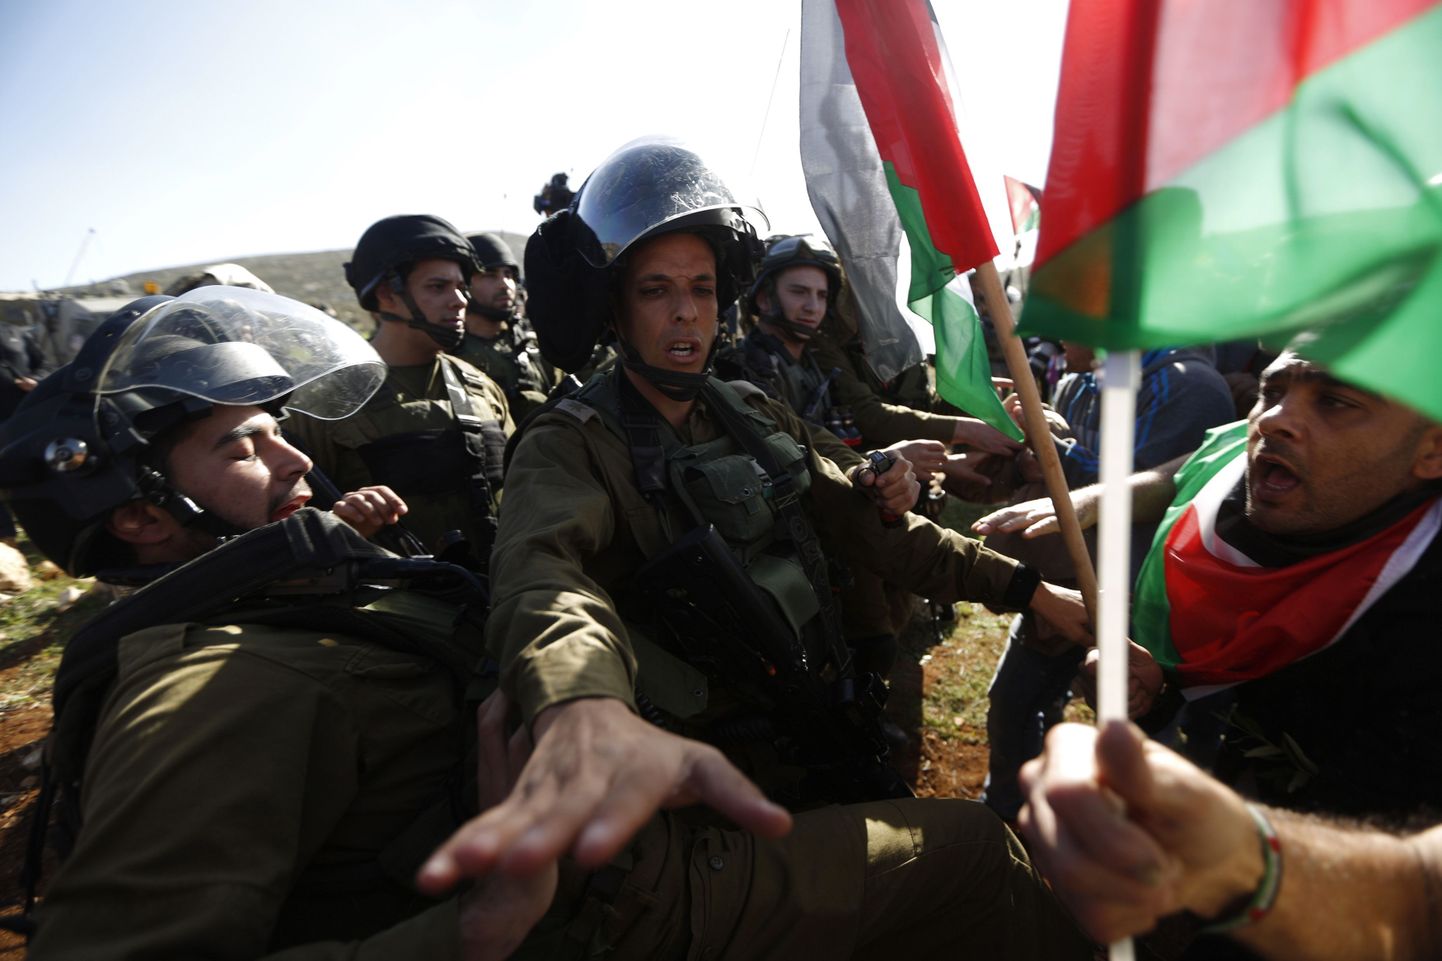 Läänekaldal puhkes täna rüselus, kus sõdurid tapsid ühe Palestiina aktivisti.